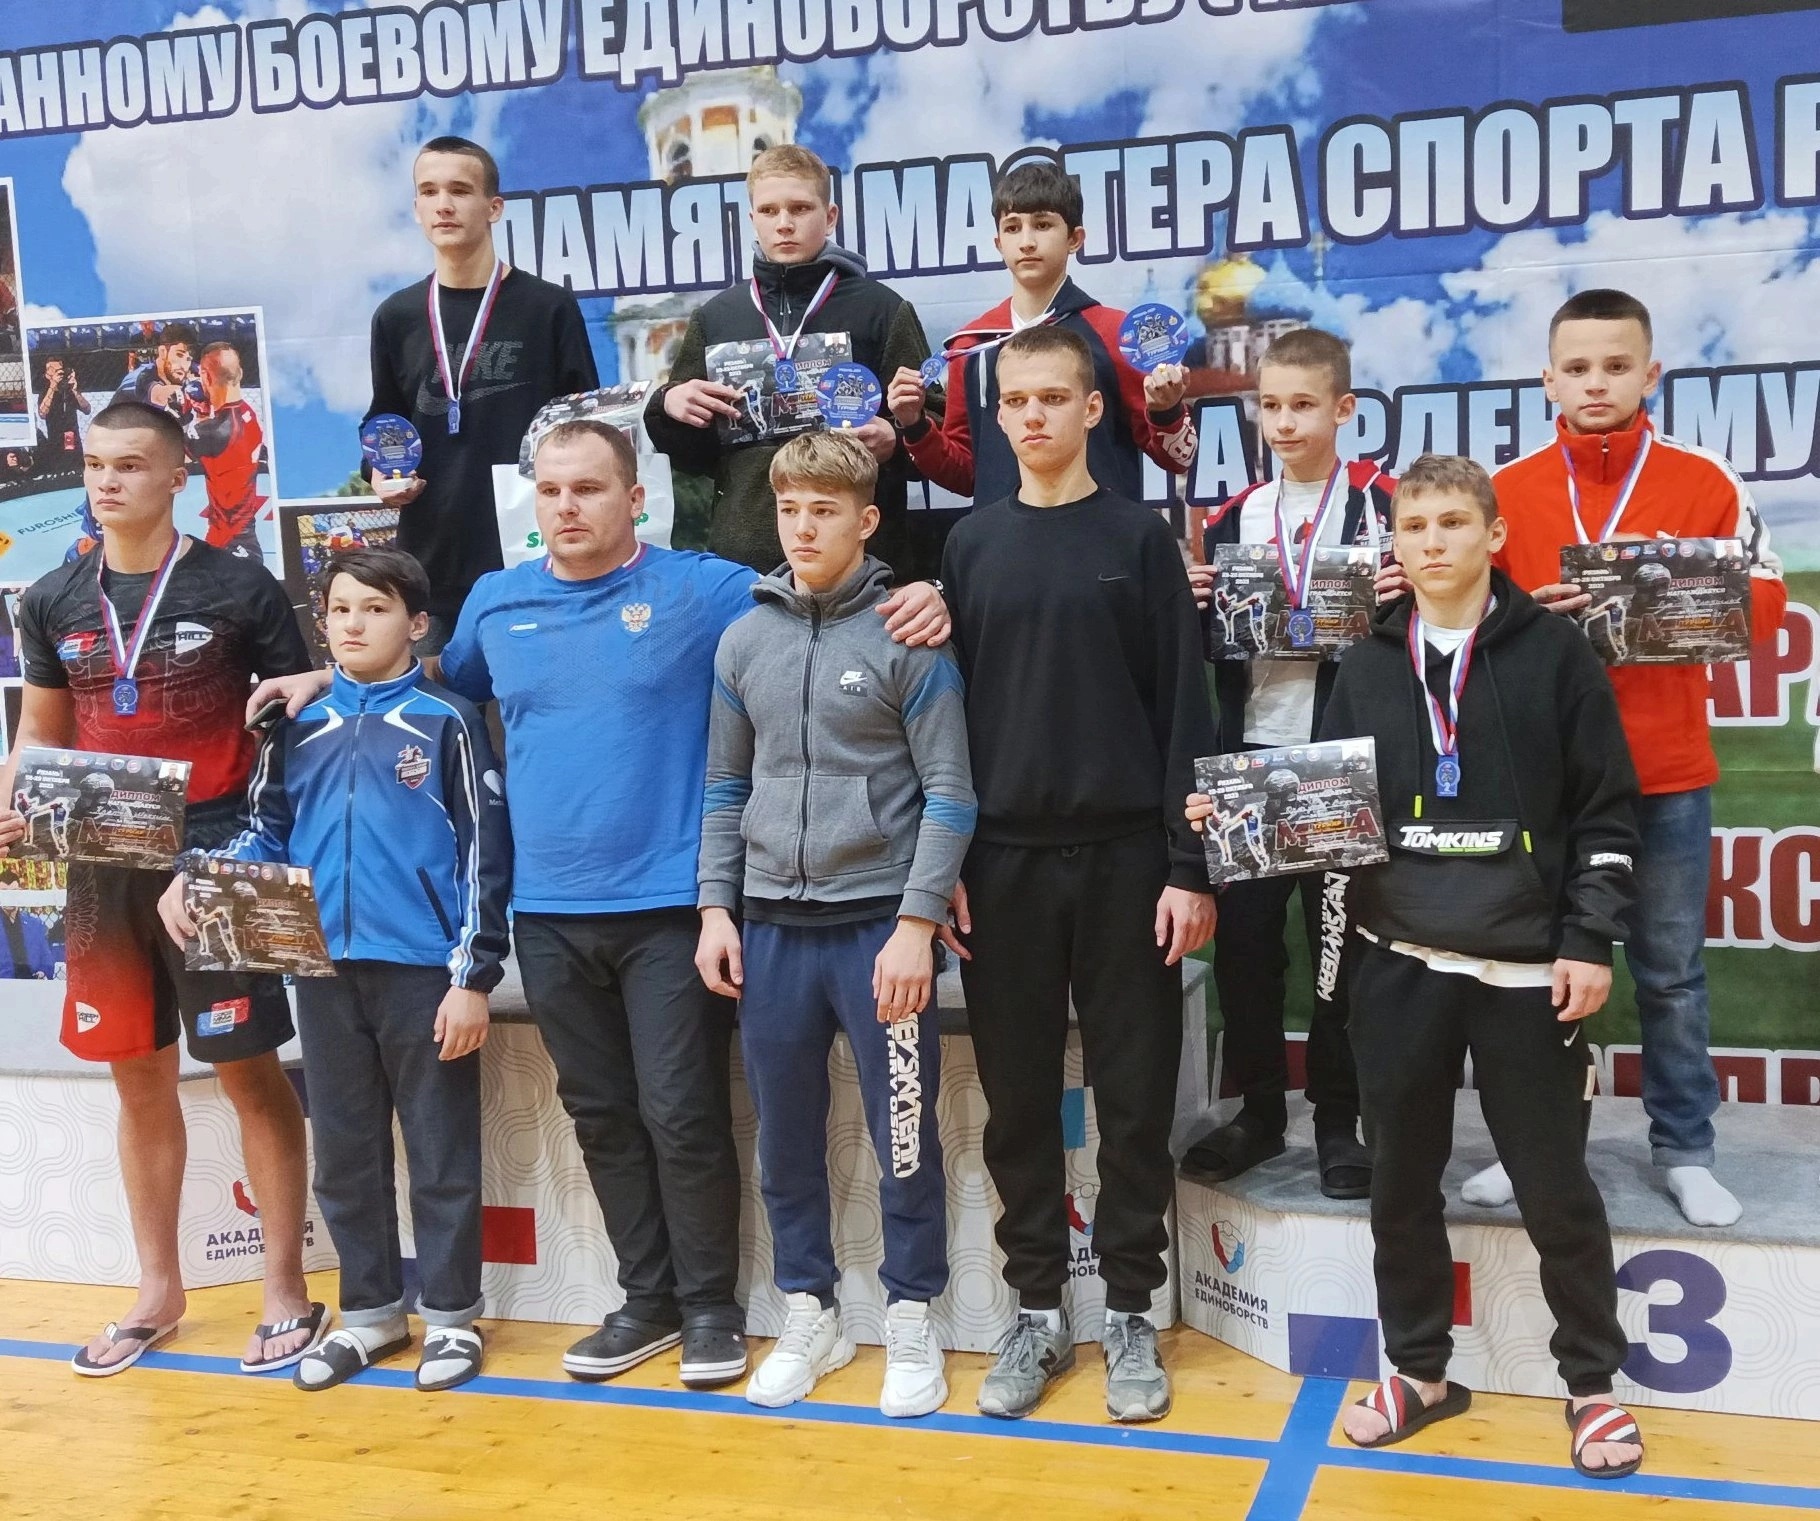 Поздравляем спортсменов и их тренеров Романа и Артема Волошко, Сергея Чесникова.